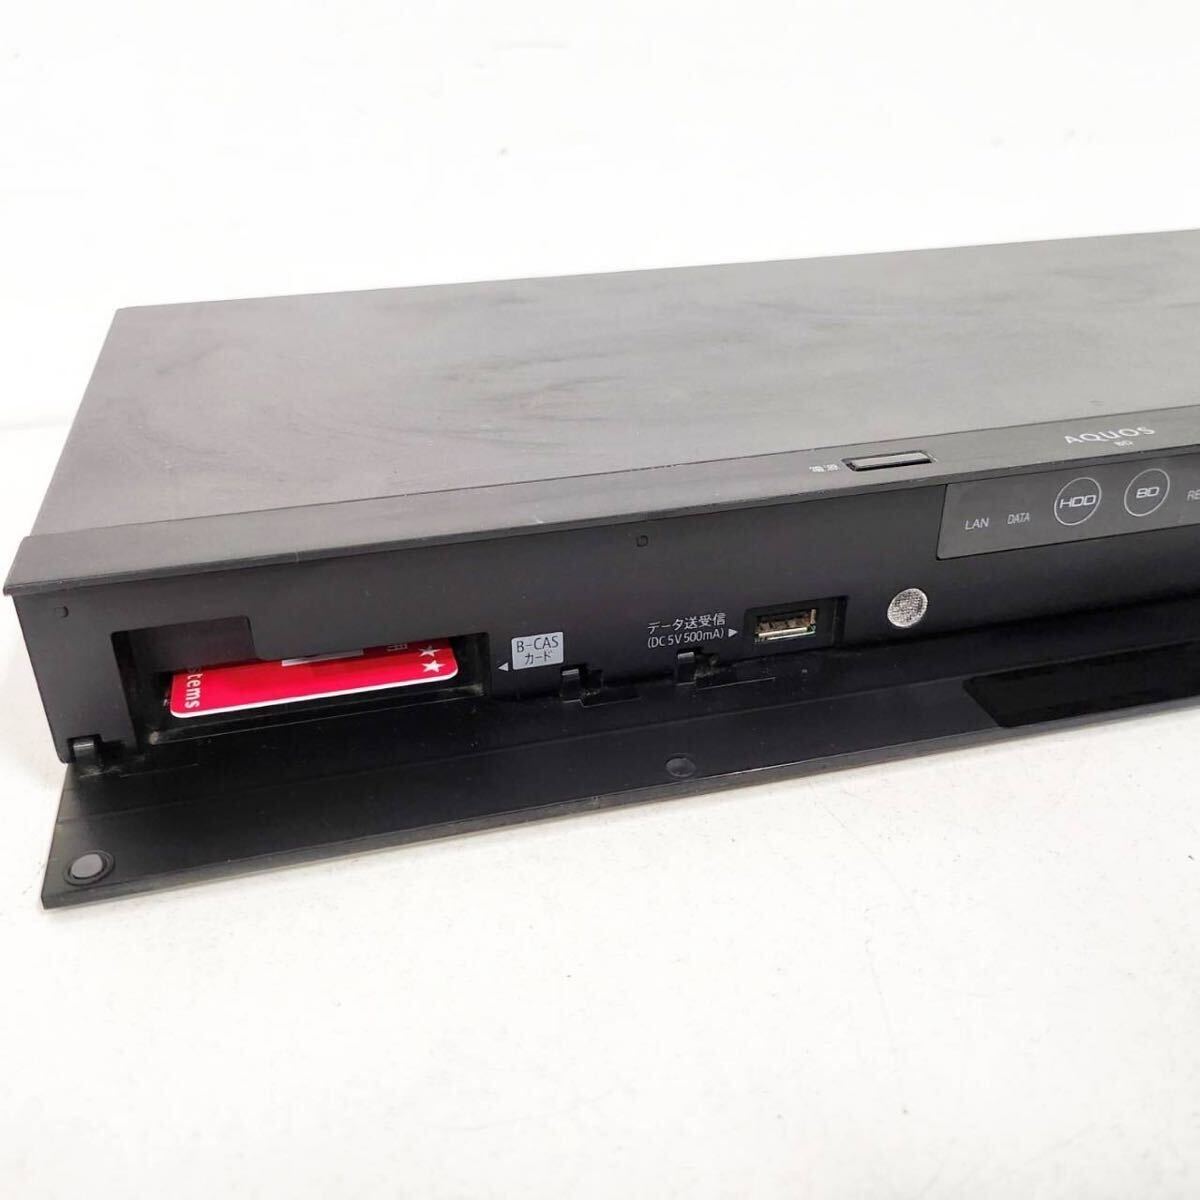 SHARP BD-NW1200/ Blue-ray магнитофон /1TB/2 номер комплект одновременно видеозапись возможно /B-CAS, дистанционный пульт,HDMI, электрический кабель приложен / установленный снаружи HDD соответствует / рабочее состояние подтверждено [NK5892]